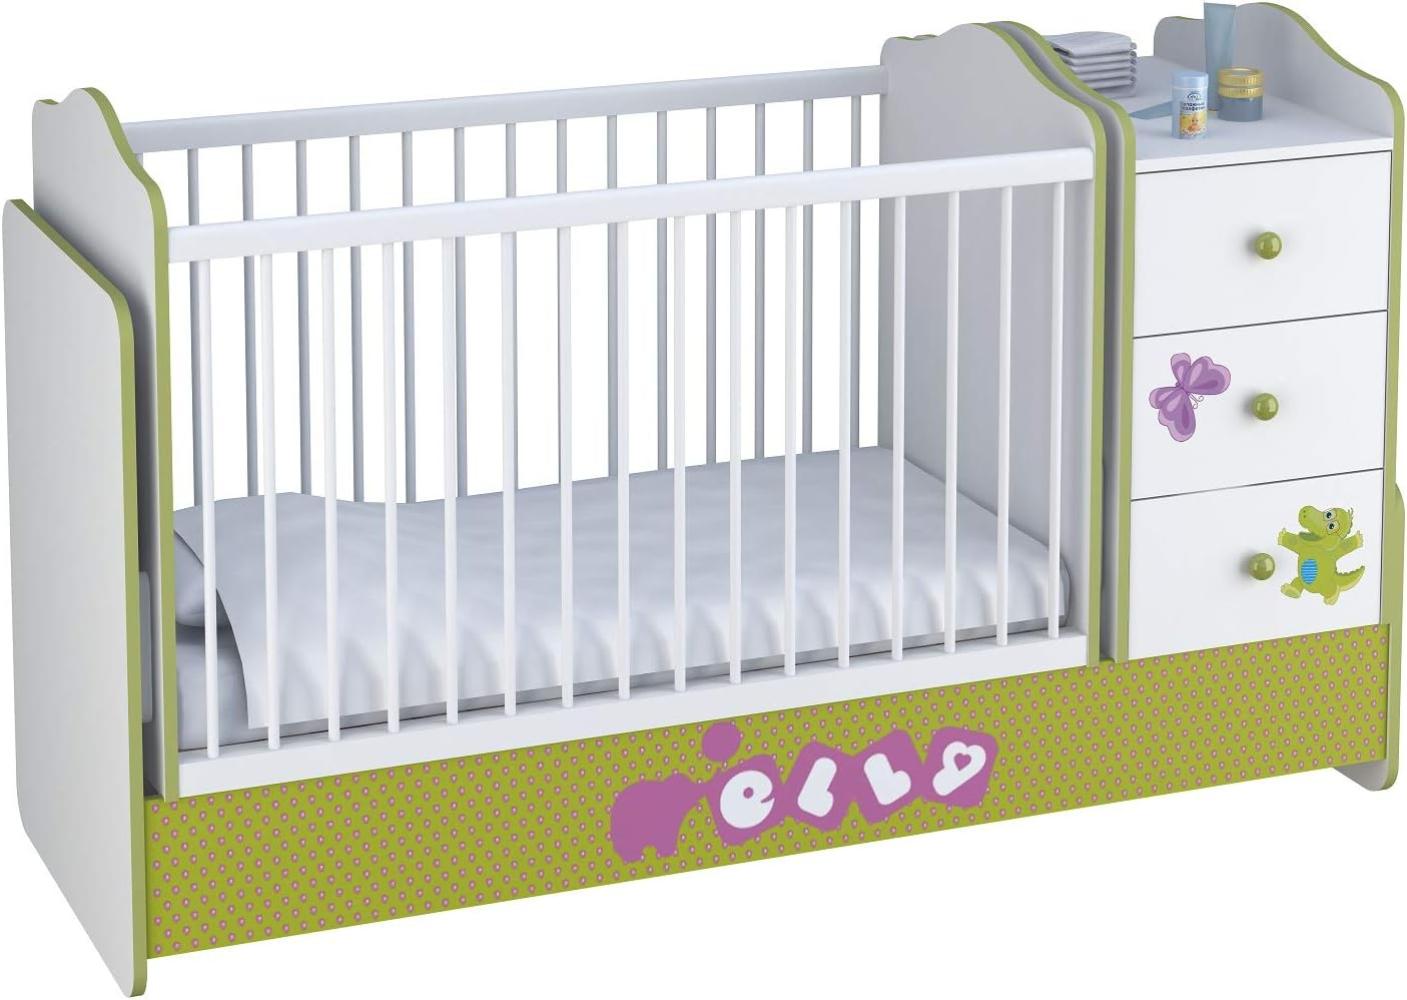 Polini Kids Kombi-Kinderbett Basic mit Kommode weiß grün Elly Bild 1